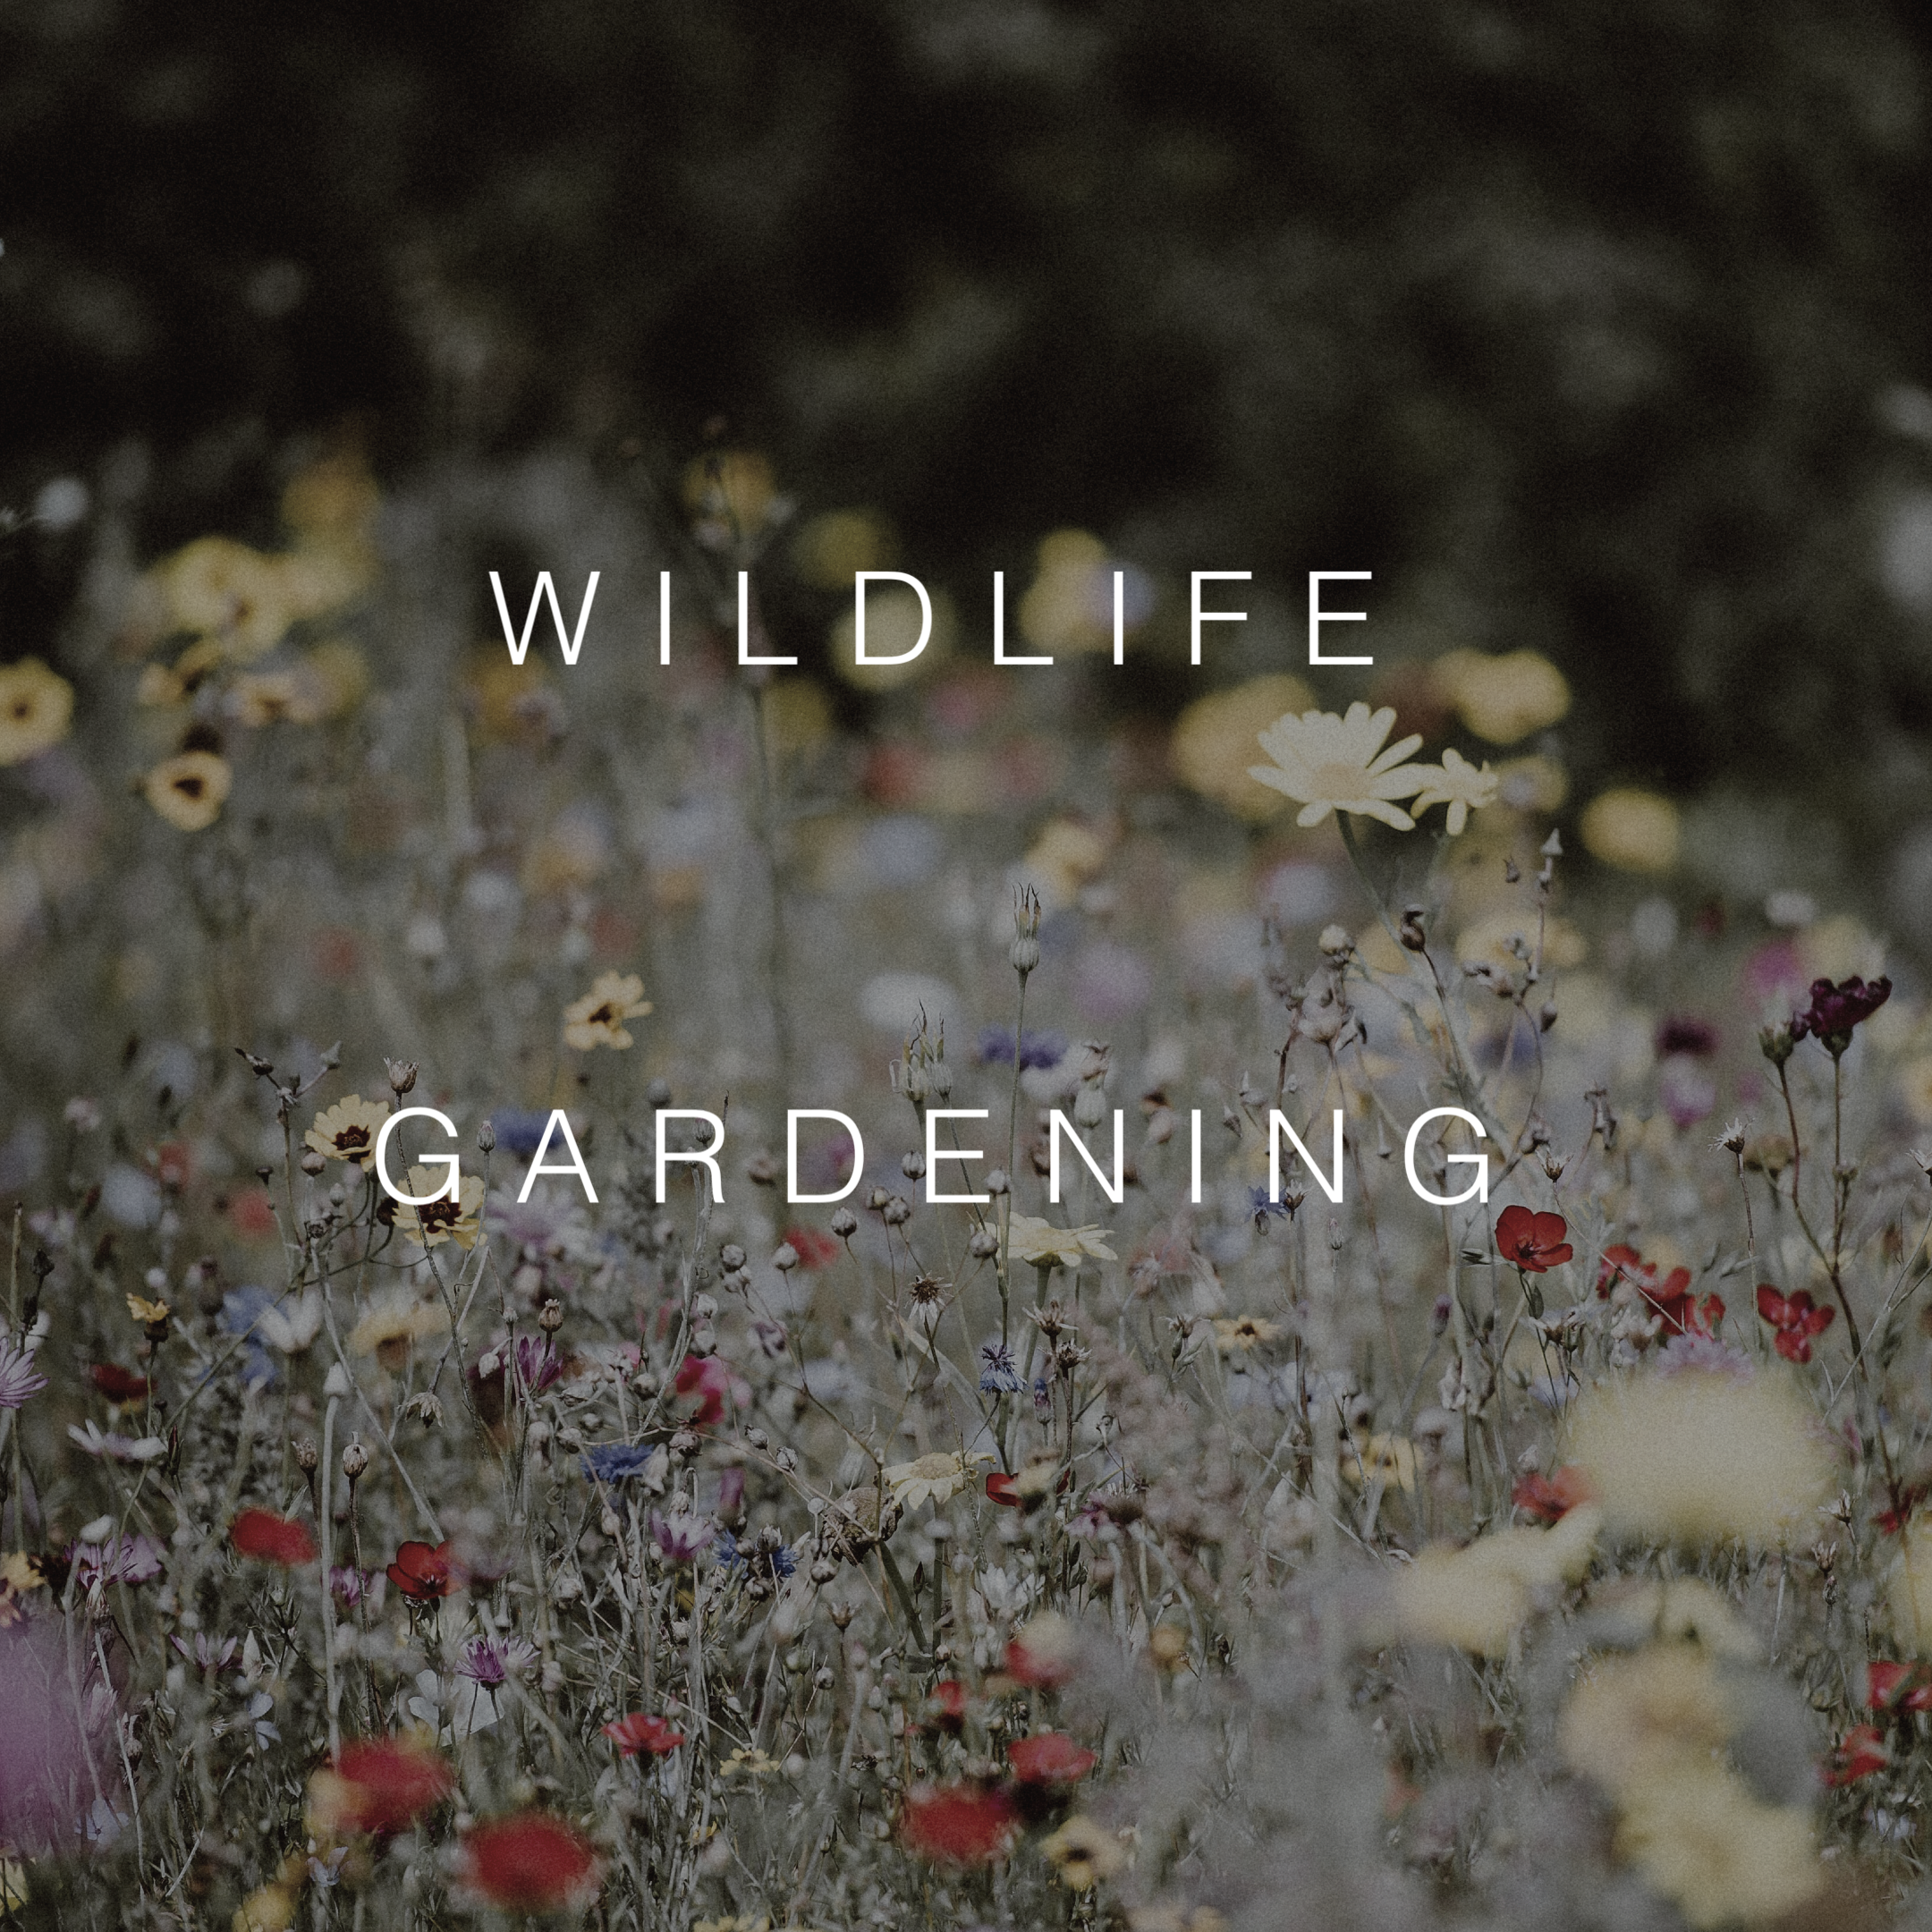 Wildlife Gardening